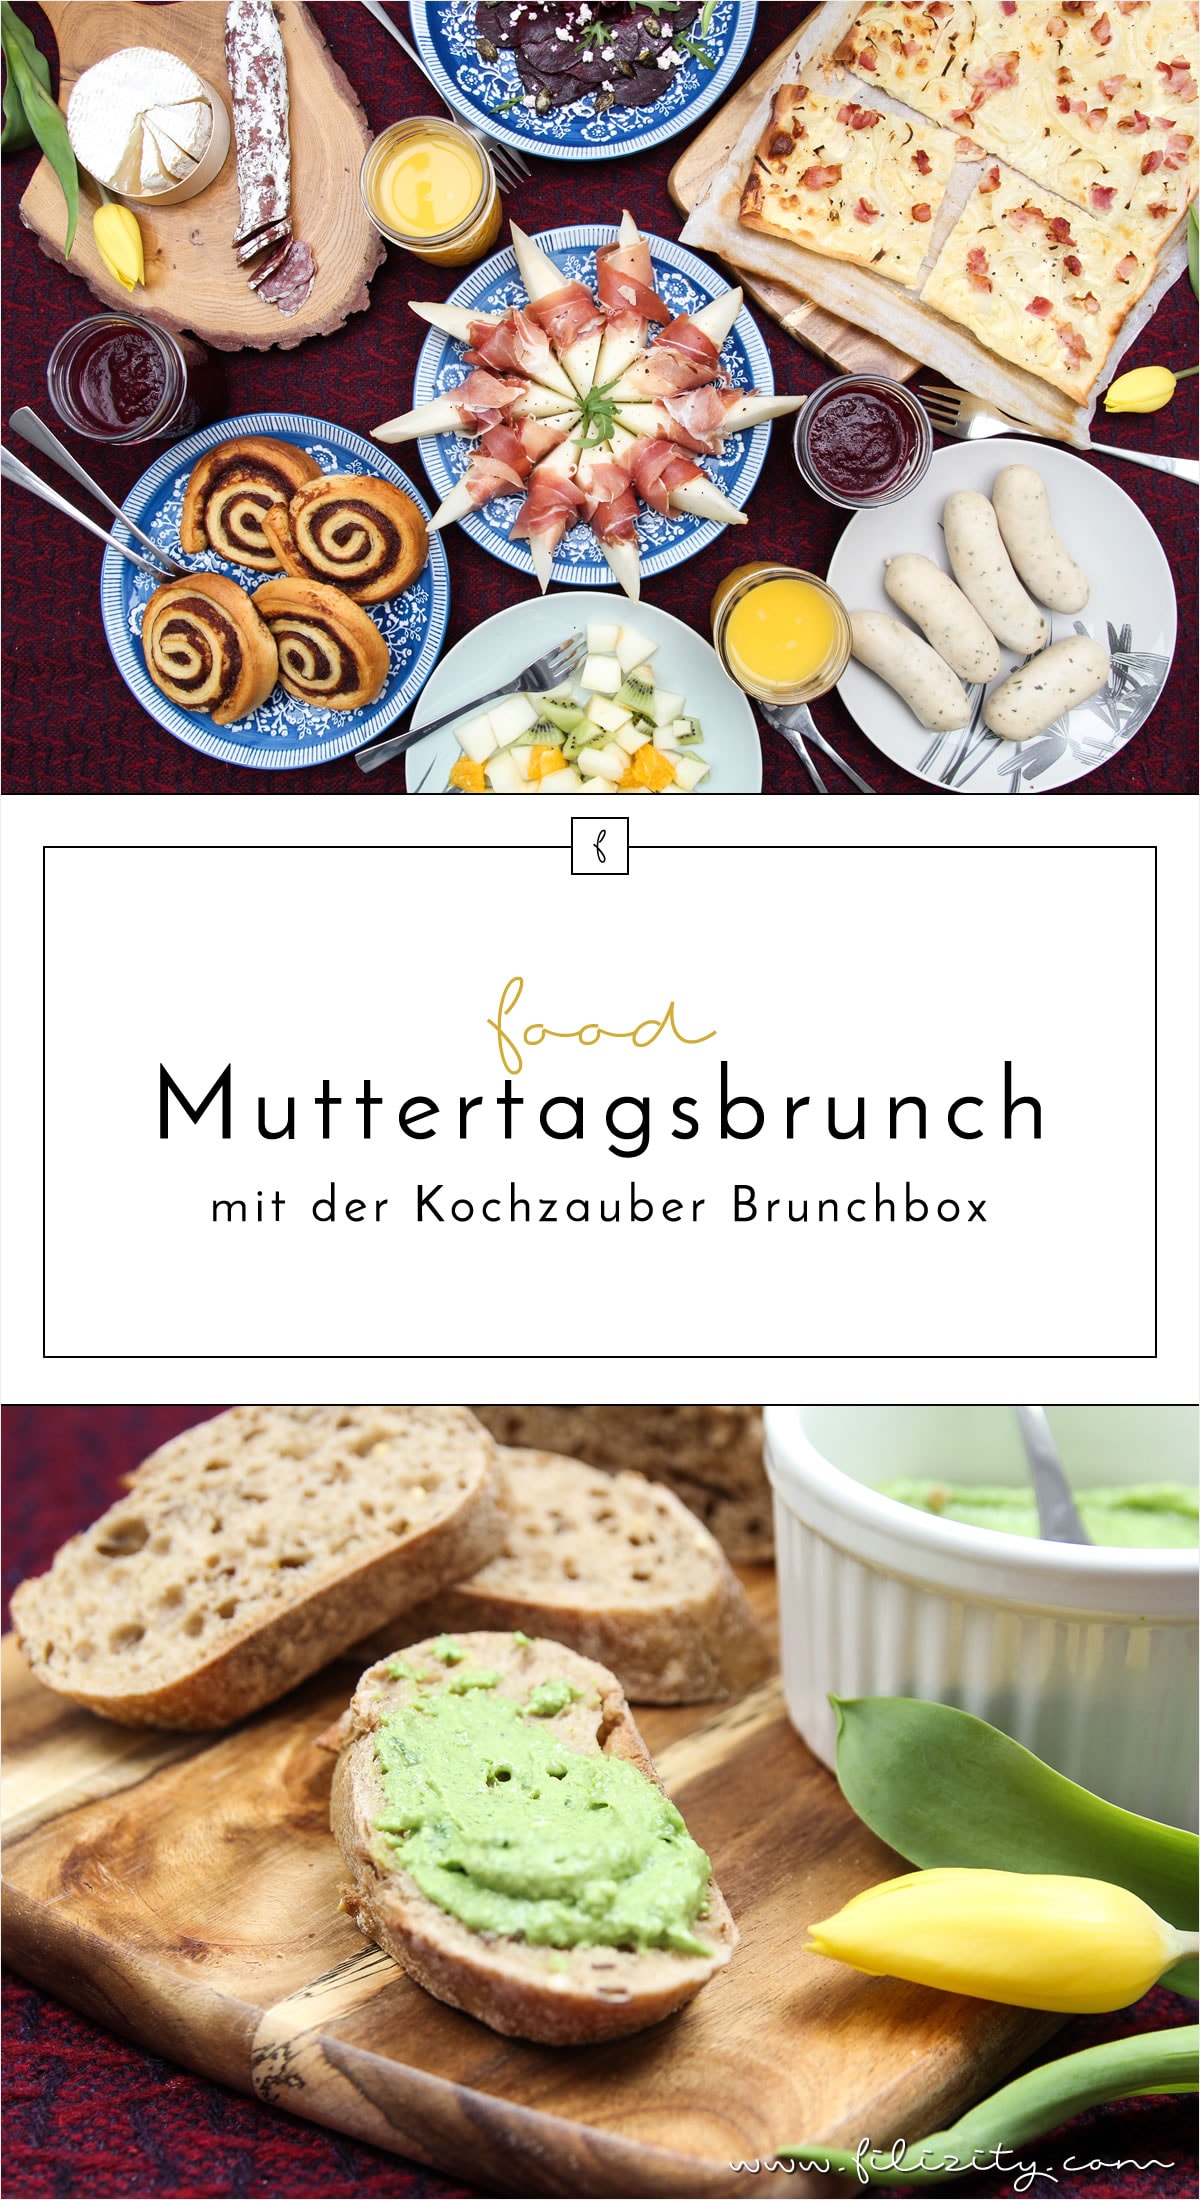 Magischer Muttertags-Brunch mit der Kochzauber Brunchbox - klassische Frühstückskomponenten und extravagante Geschmackshighlights